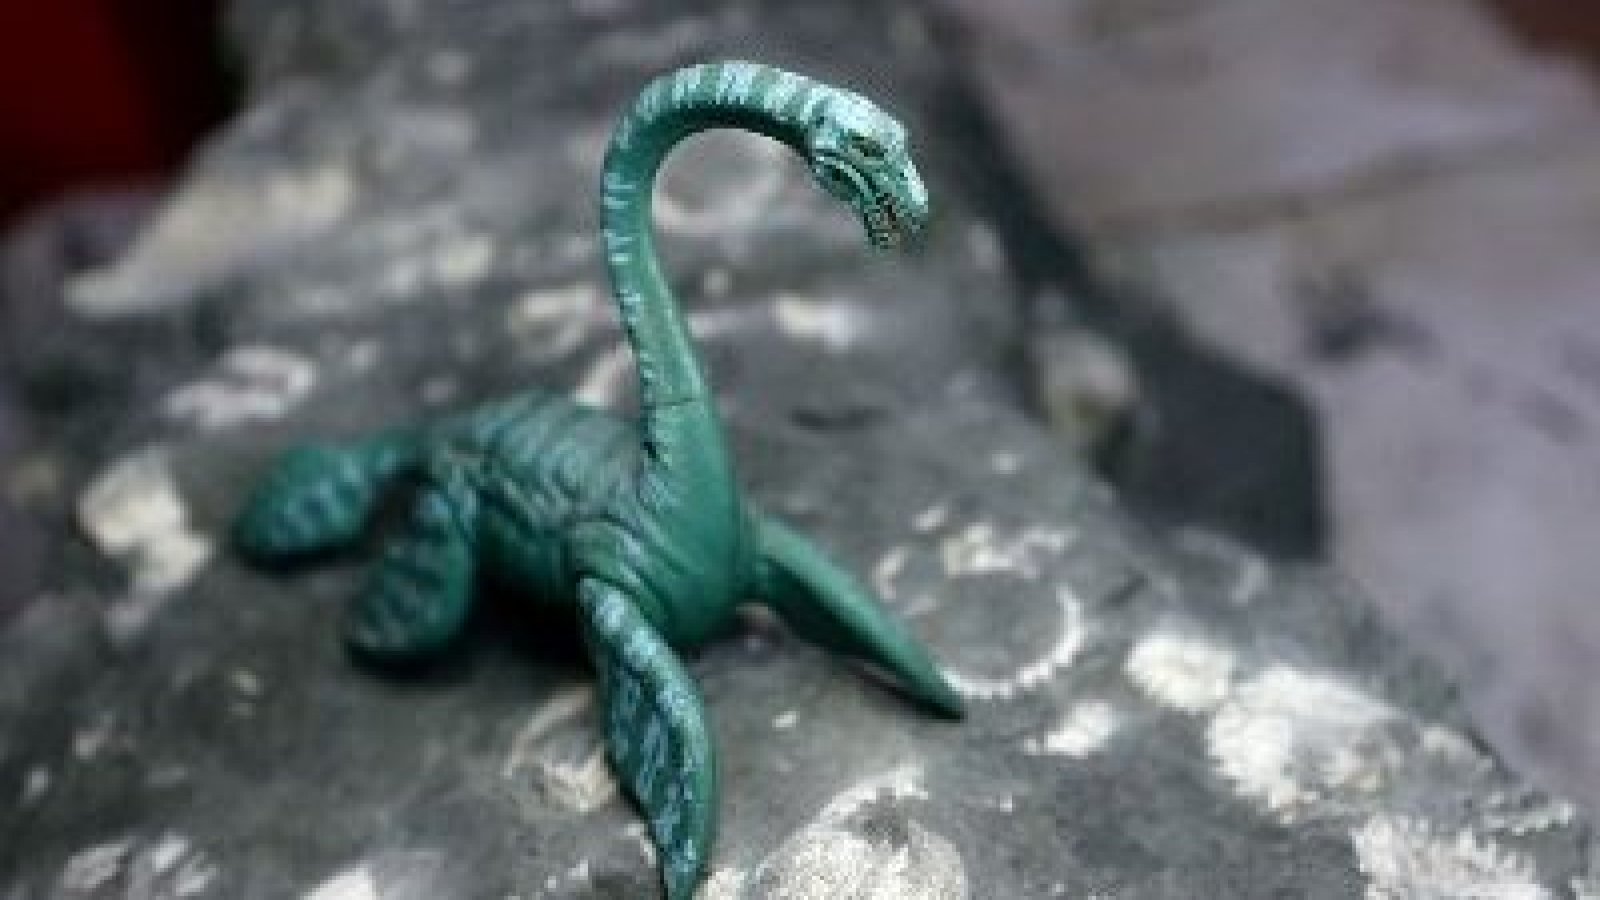 Tesoro en Algarrobo: Hallan Elasmosaurio de 70 millones de años en costa chilena